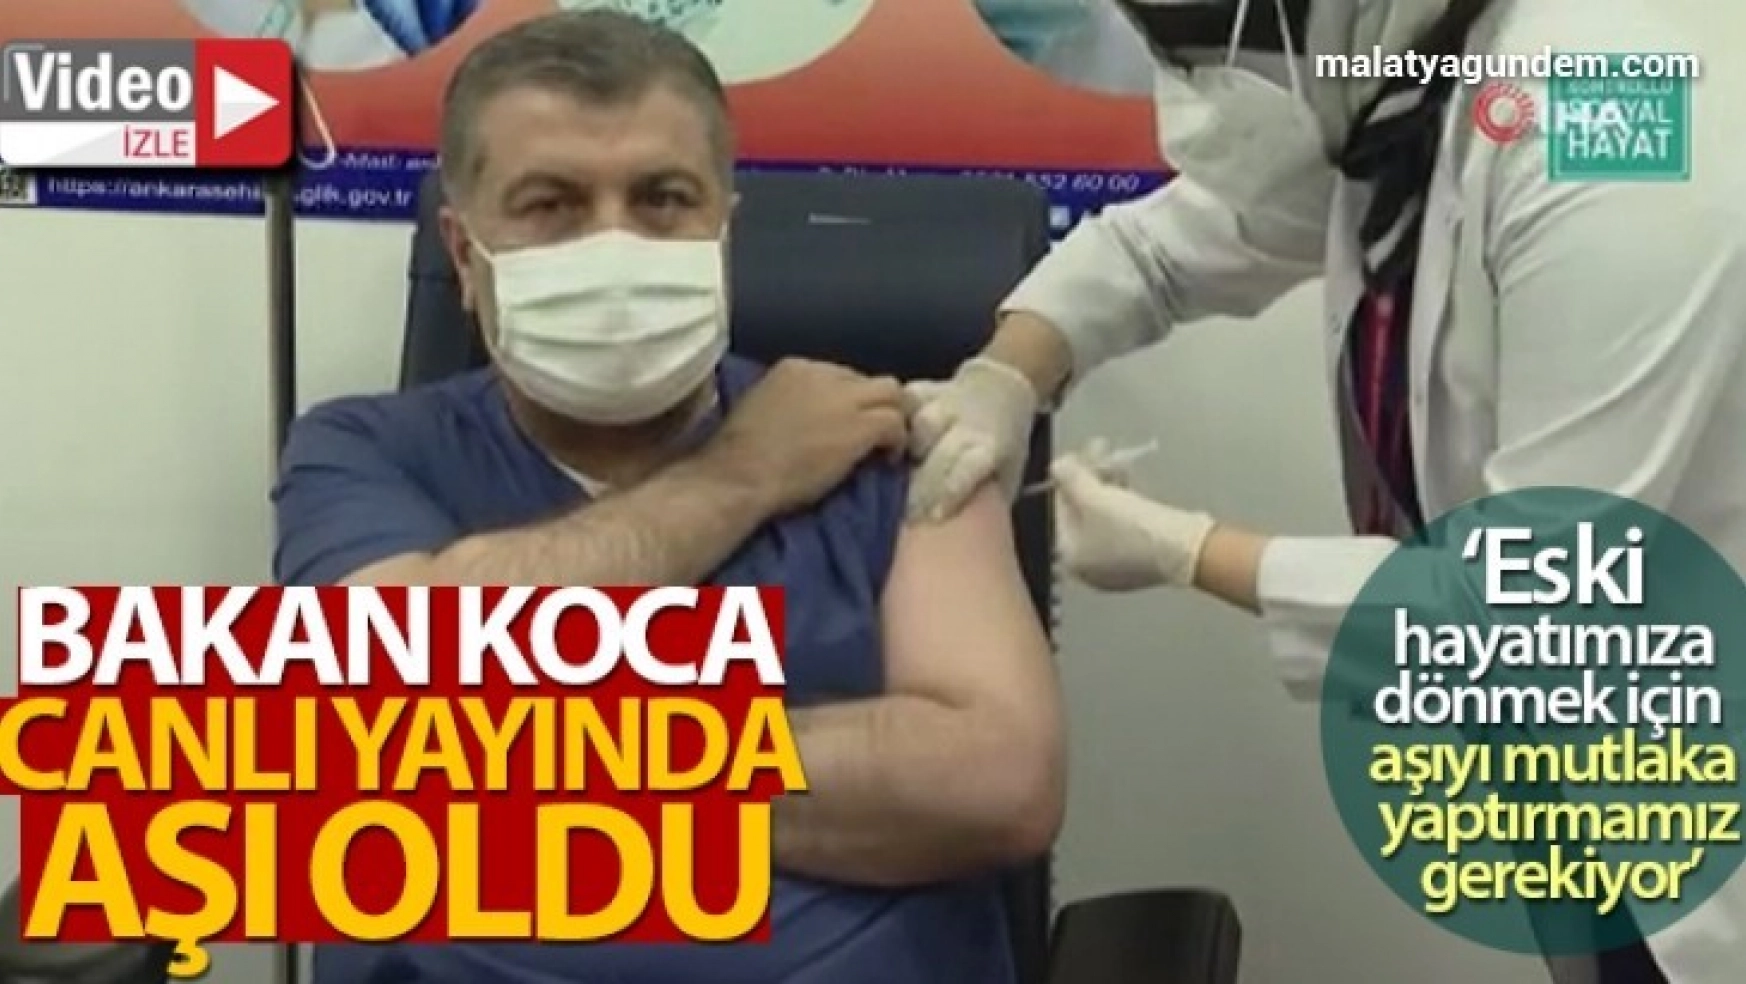 Sağlık Bakanı Koca, korona virüs aşısı oldu